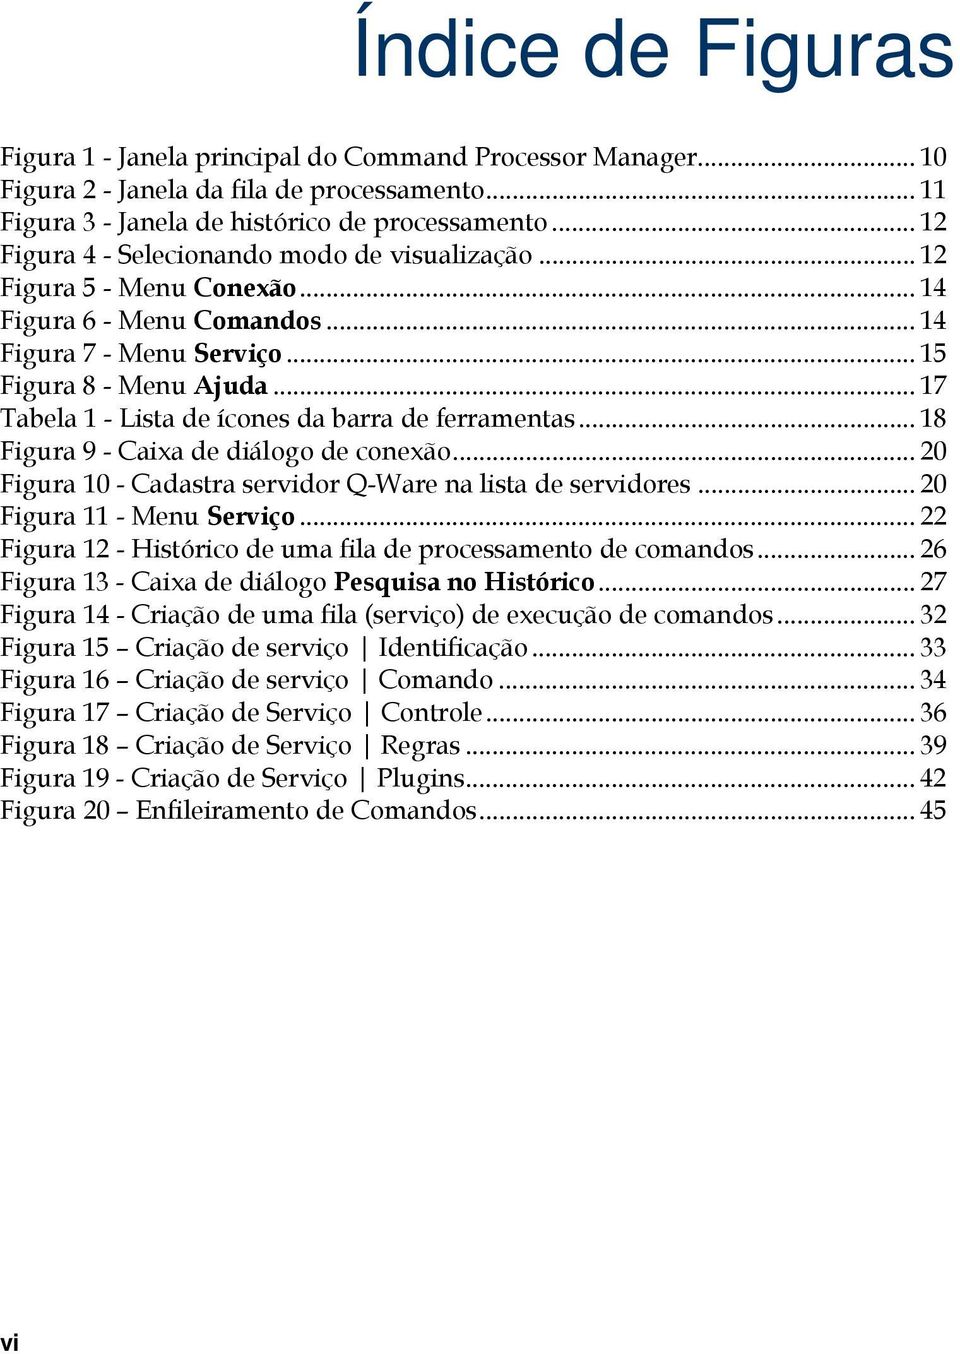 .. 17 Tabela 1 - Lista de ícones da barra de ferramentas... 18 Figura 9 - Caixa de diálogo de conexão... 20 Figura 10 - Cadastra servidor Q-Ware na lista de servidores... 20 Figura 11 - Menu Serviço.